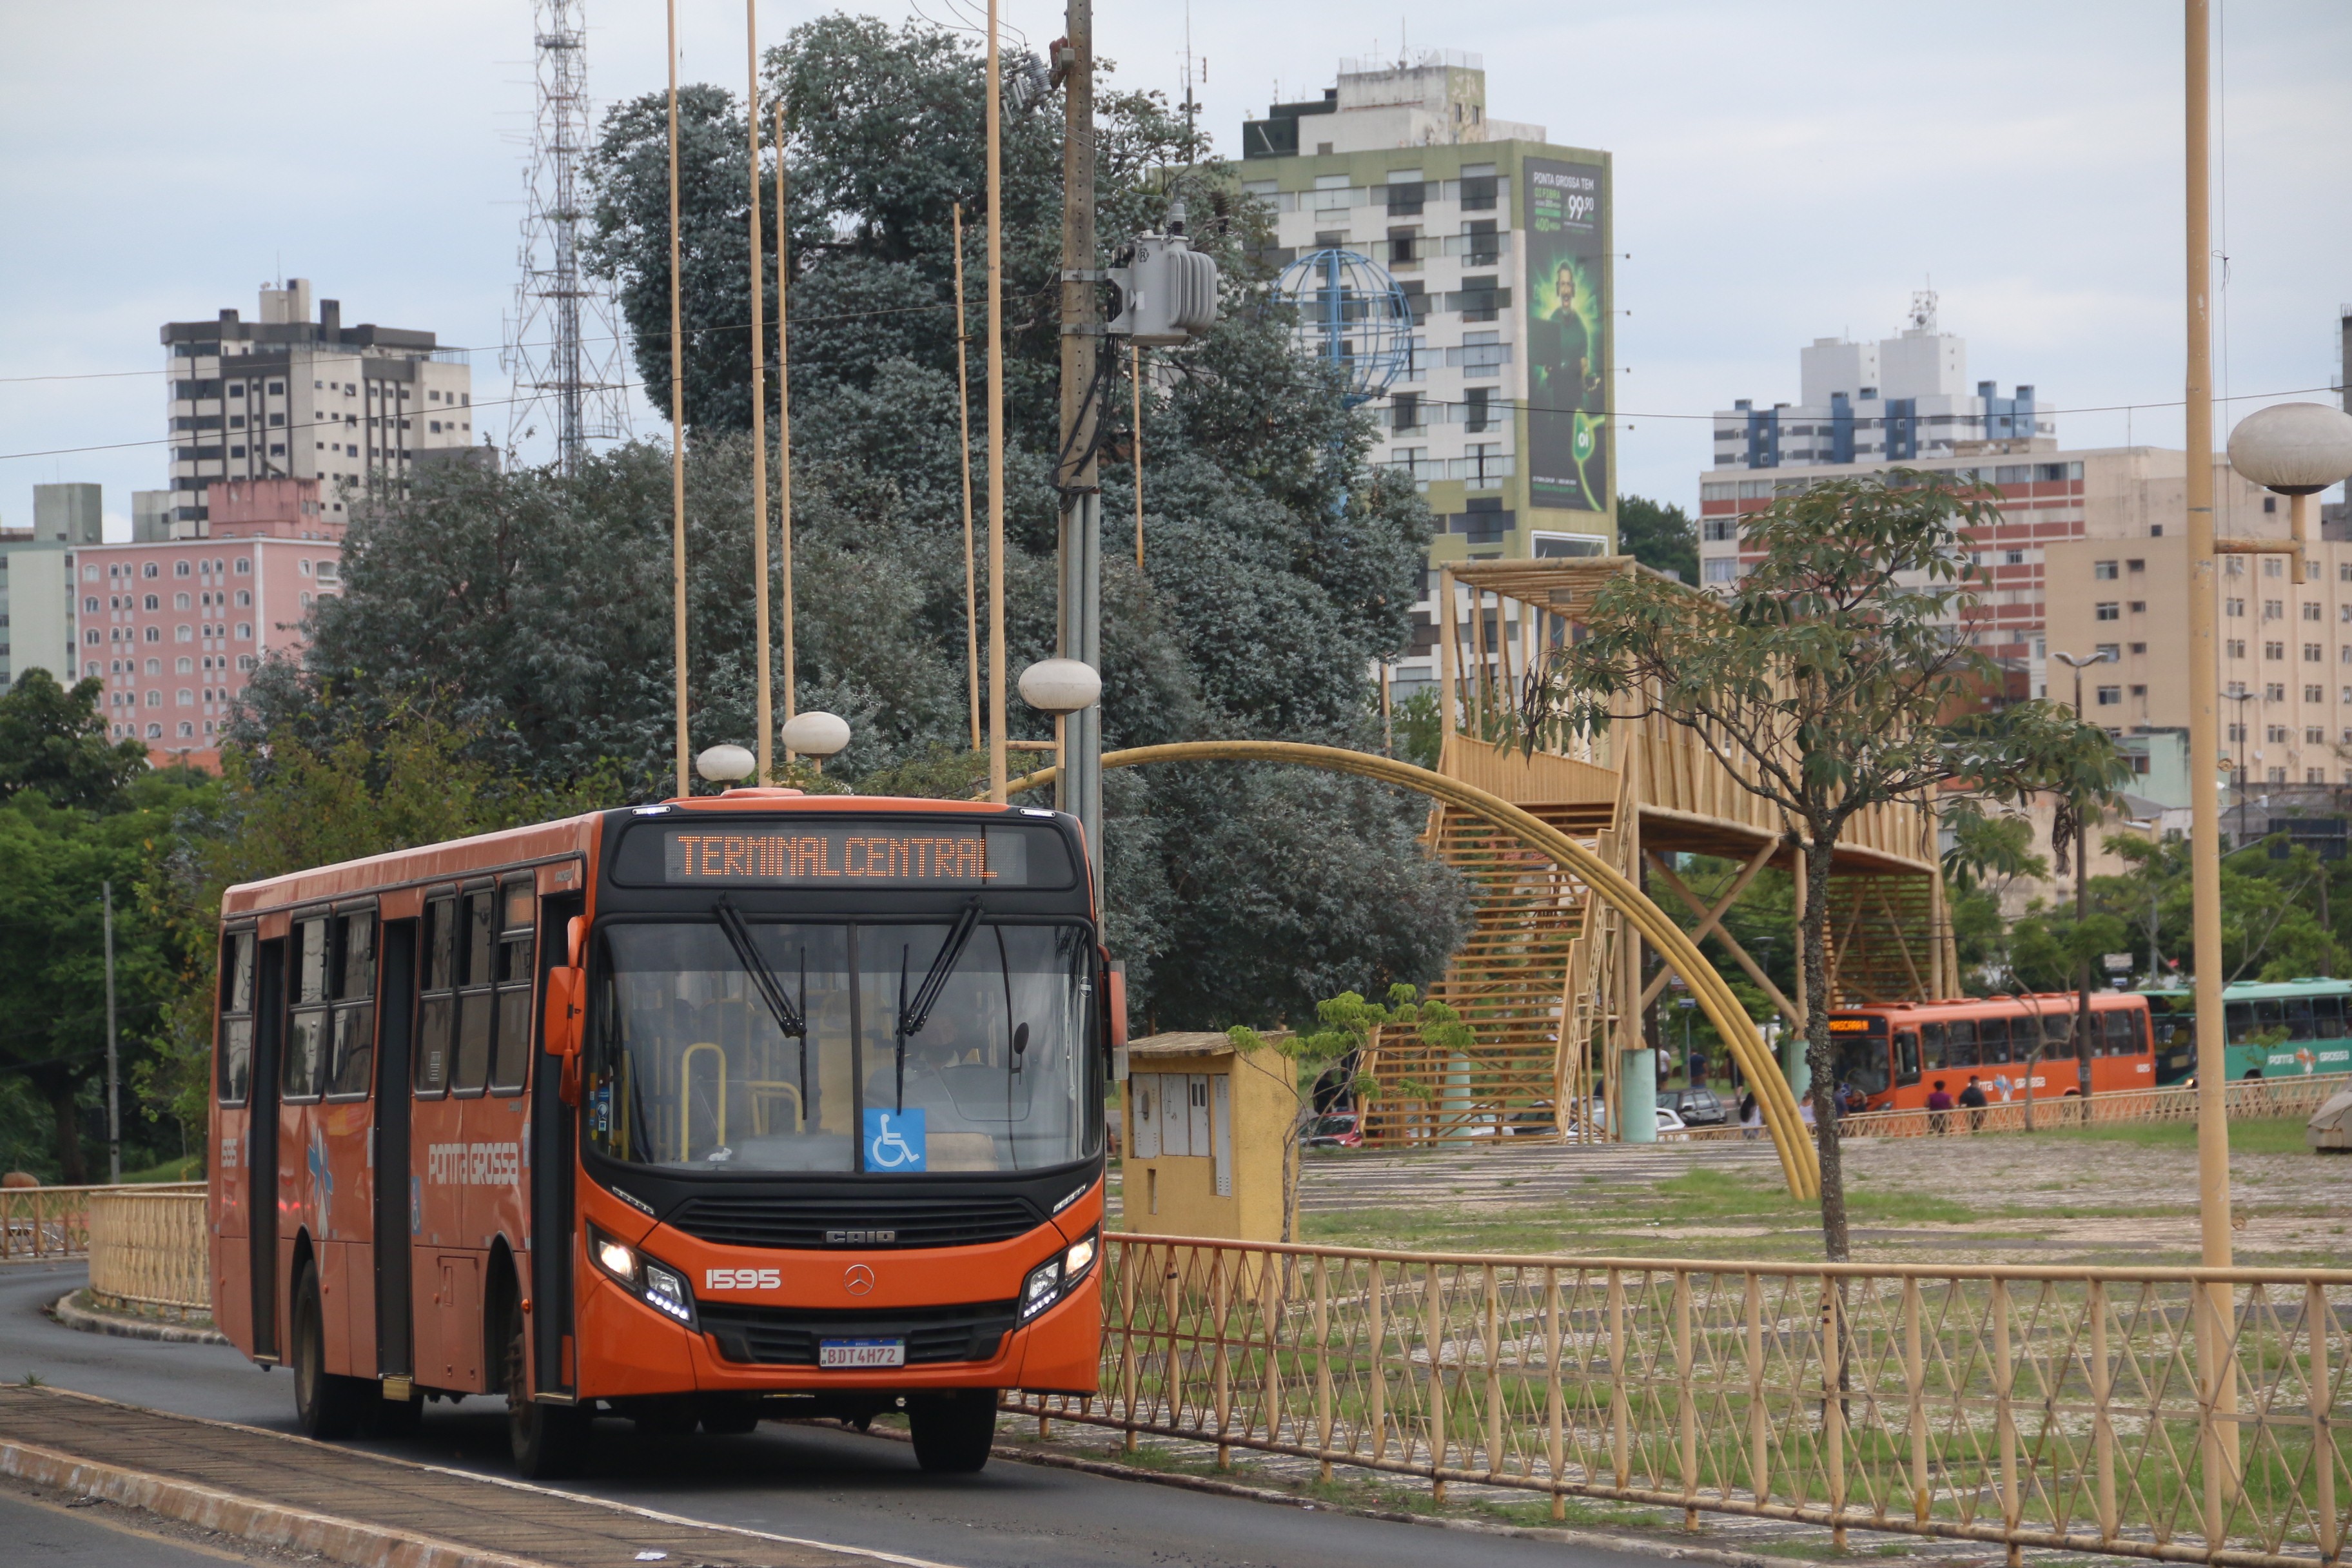 Transporte público de Ponta Grossa tem mudanças com alteração de linhas e horários a partir de 19 de abril; veja como fica